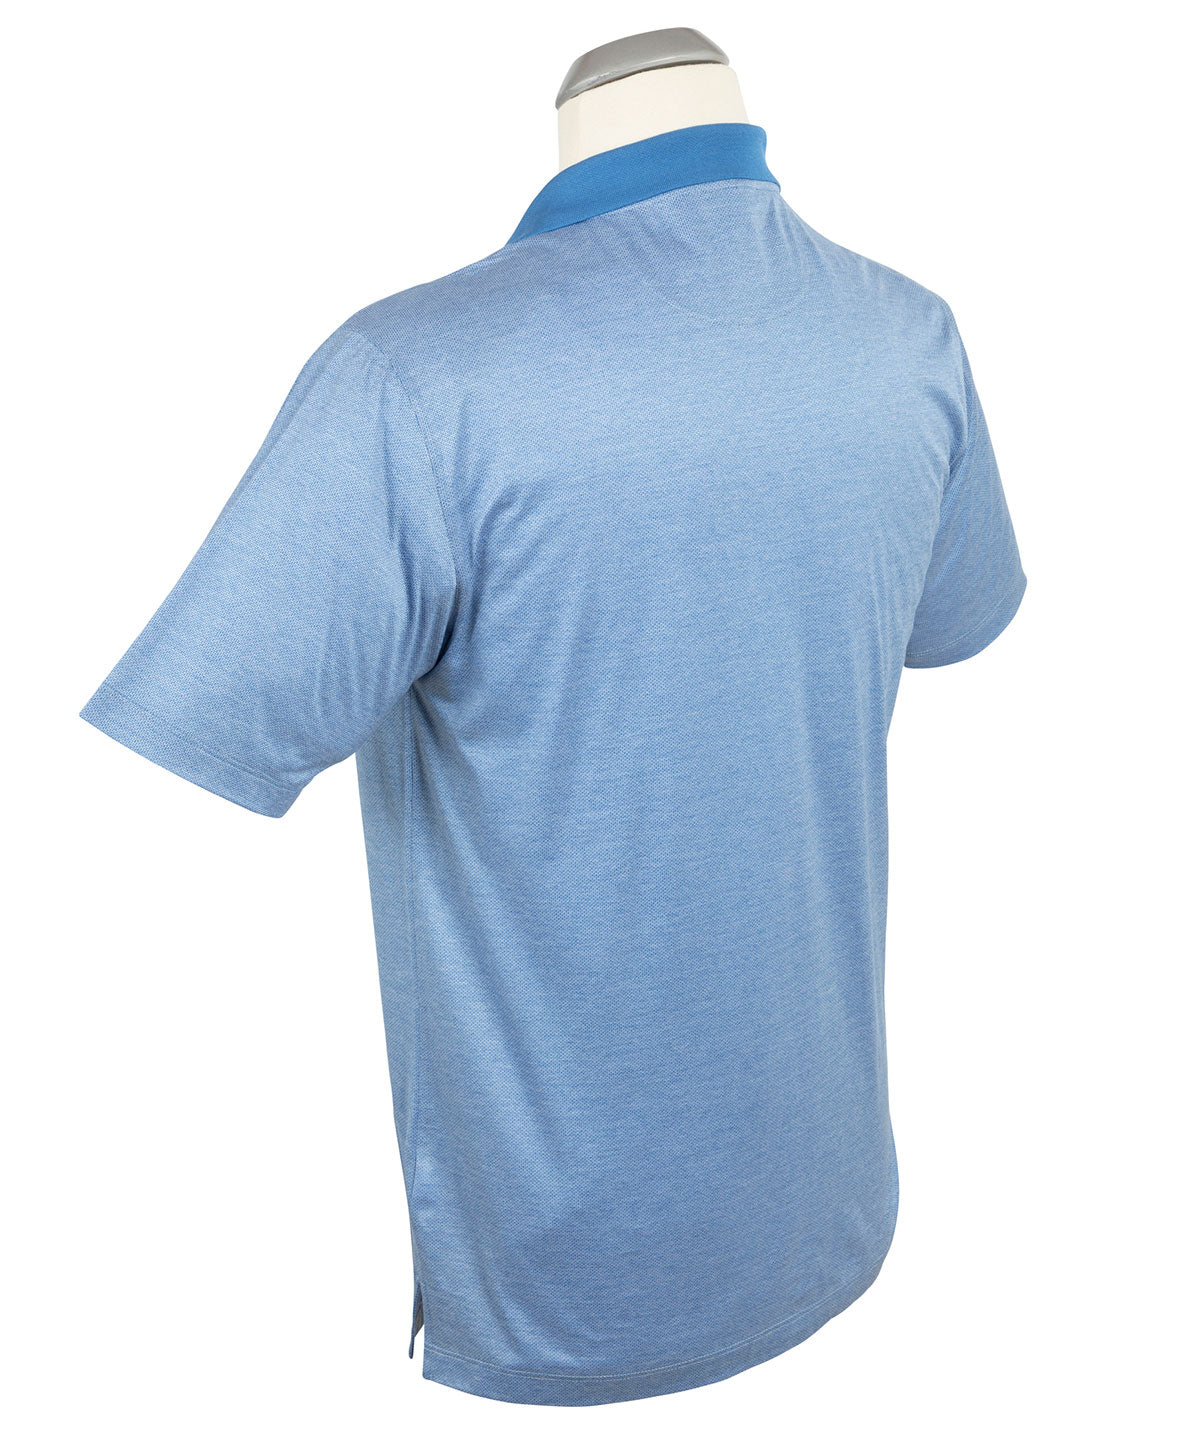 Heritage Luxe Italian Cotton Textured Birdseye Polo Shirt